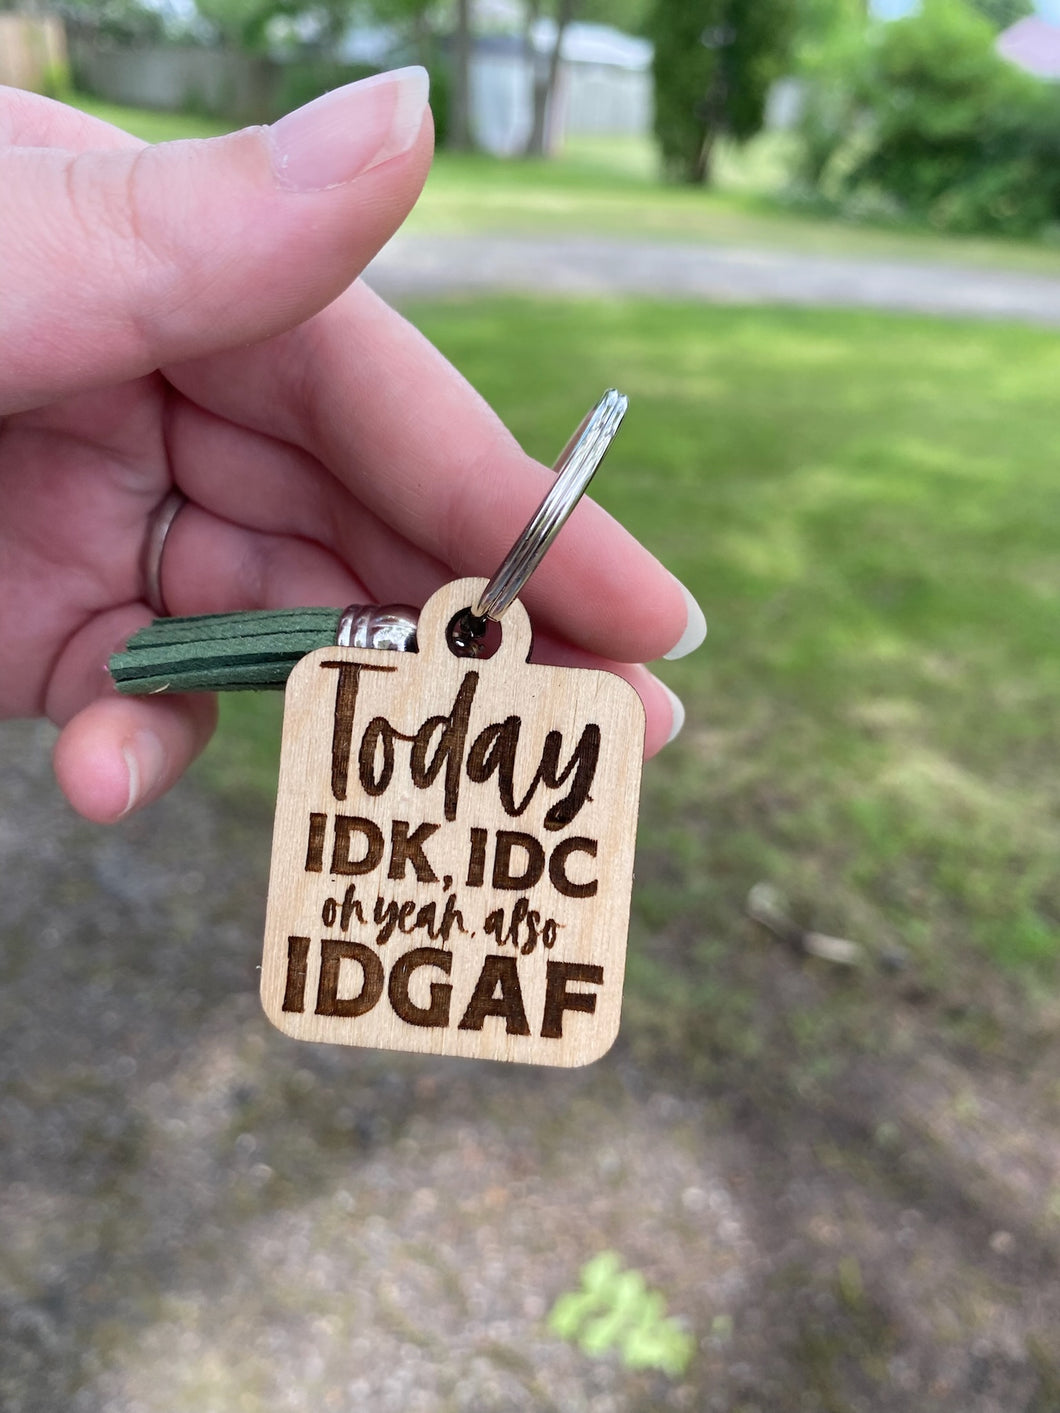 Keychain - Today IDK IDC IDGAF